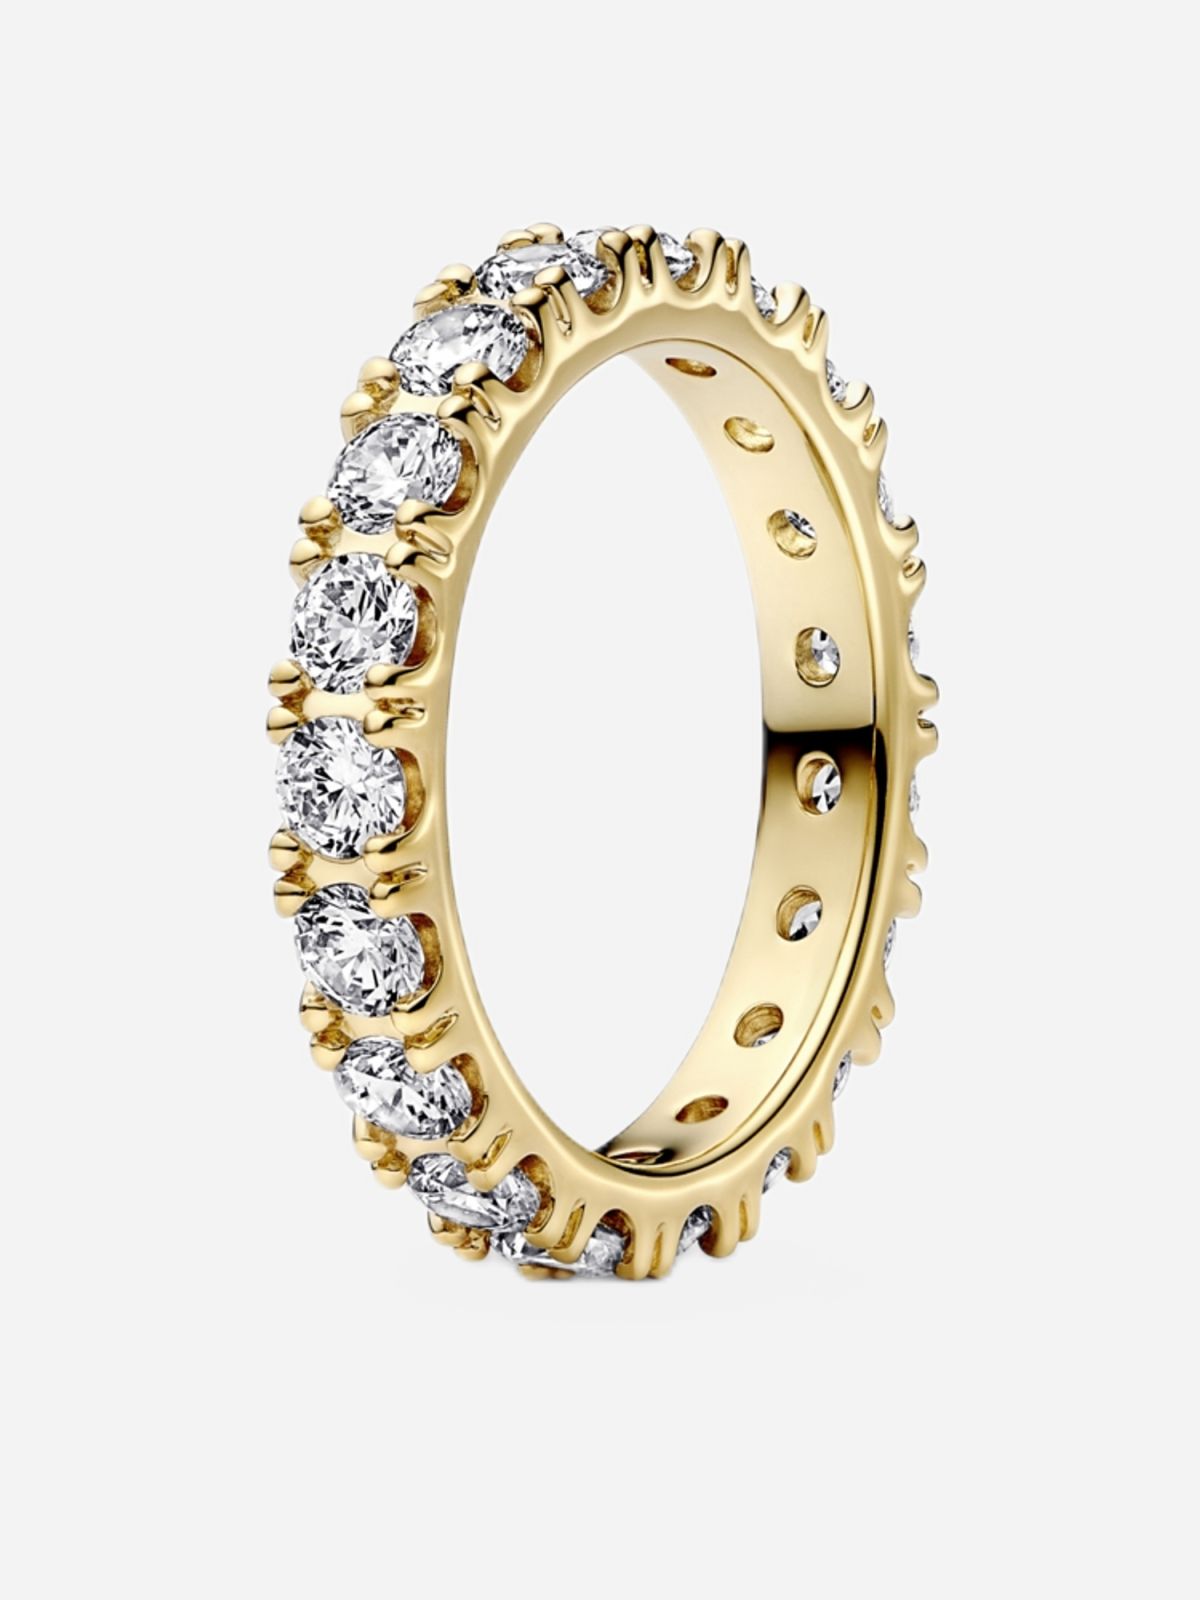  טבעת ציפוי זהב אהבה נצחית של PANDORA